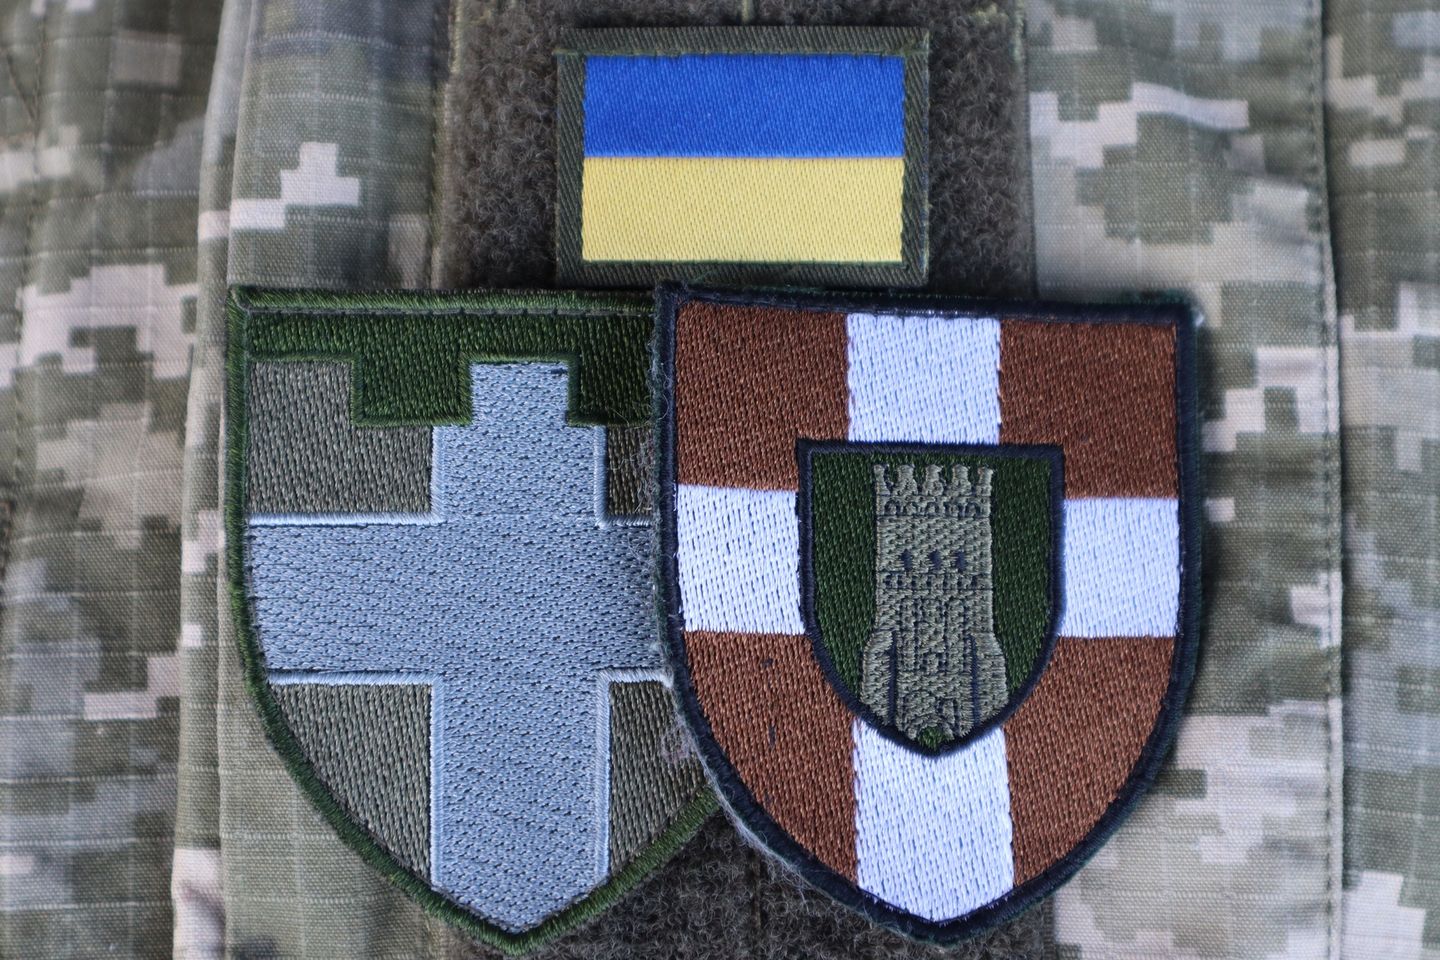 100 окрема механізована бригада ЗСУ запрошує на службу в підрозділах бригади